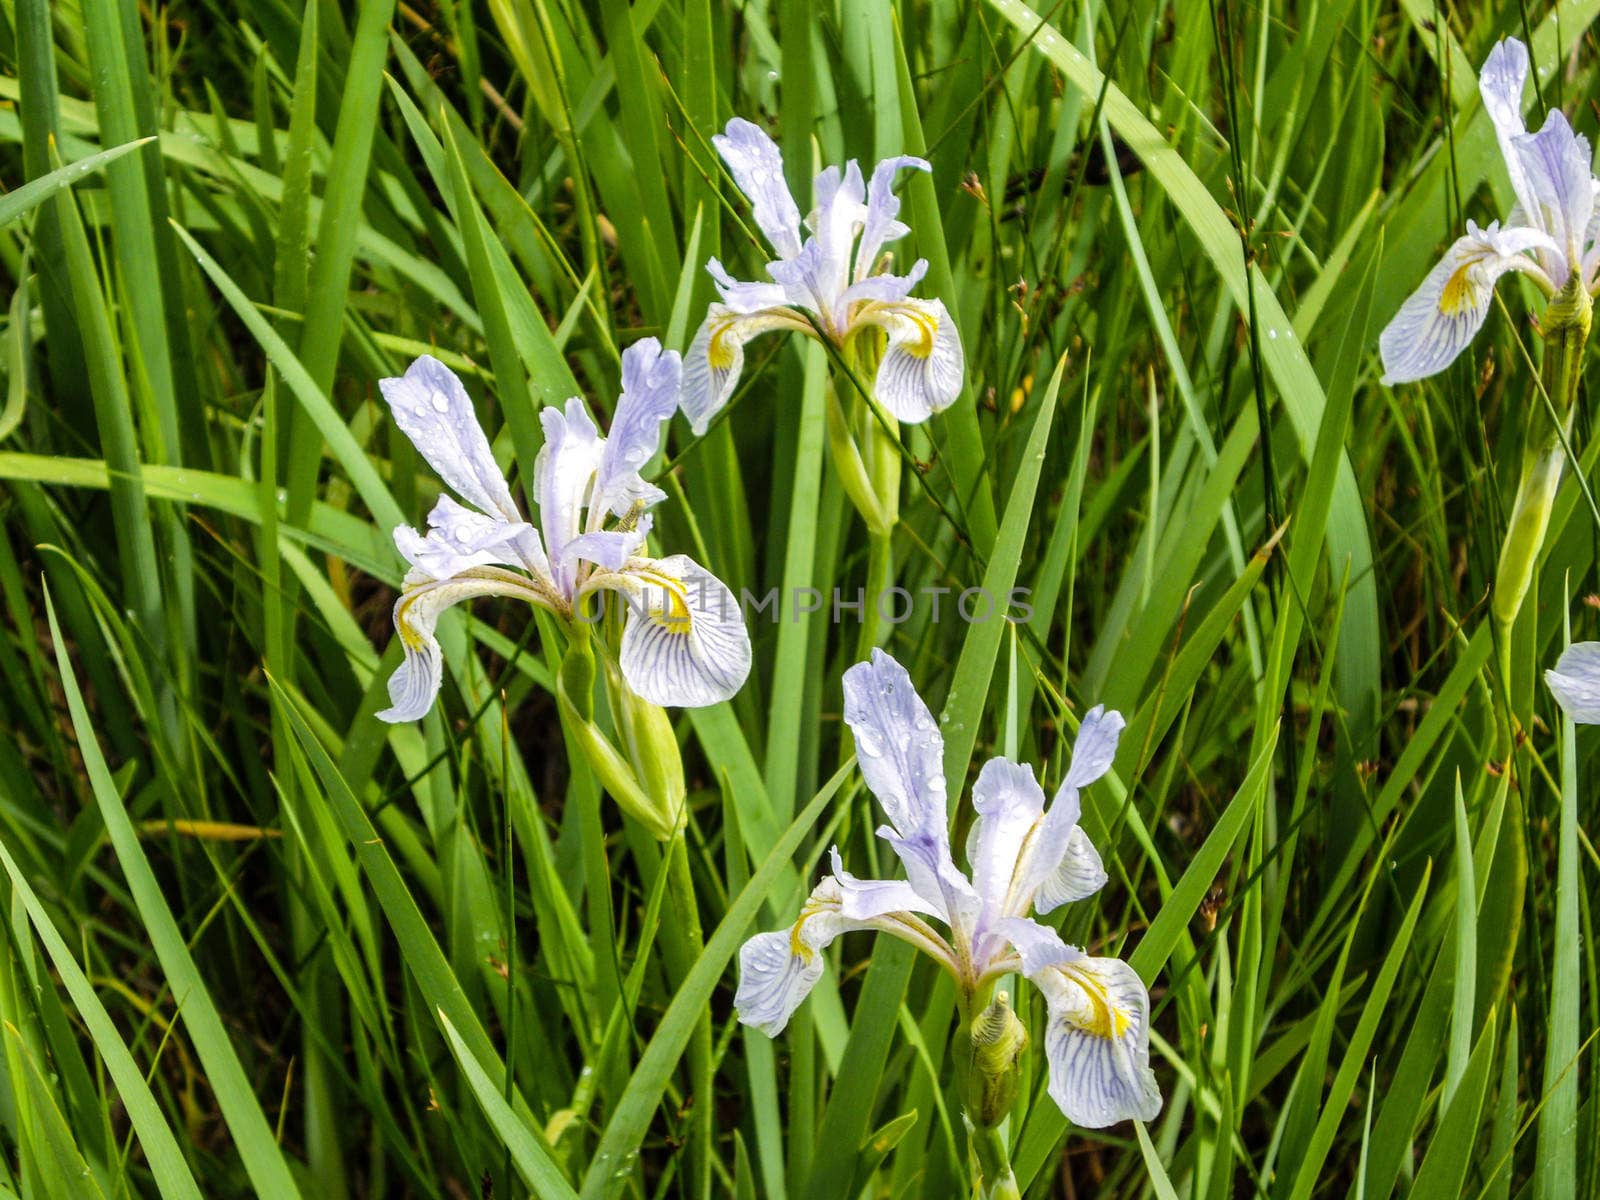 Wild Wet Iris by emattil